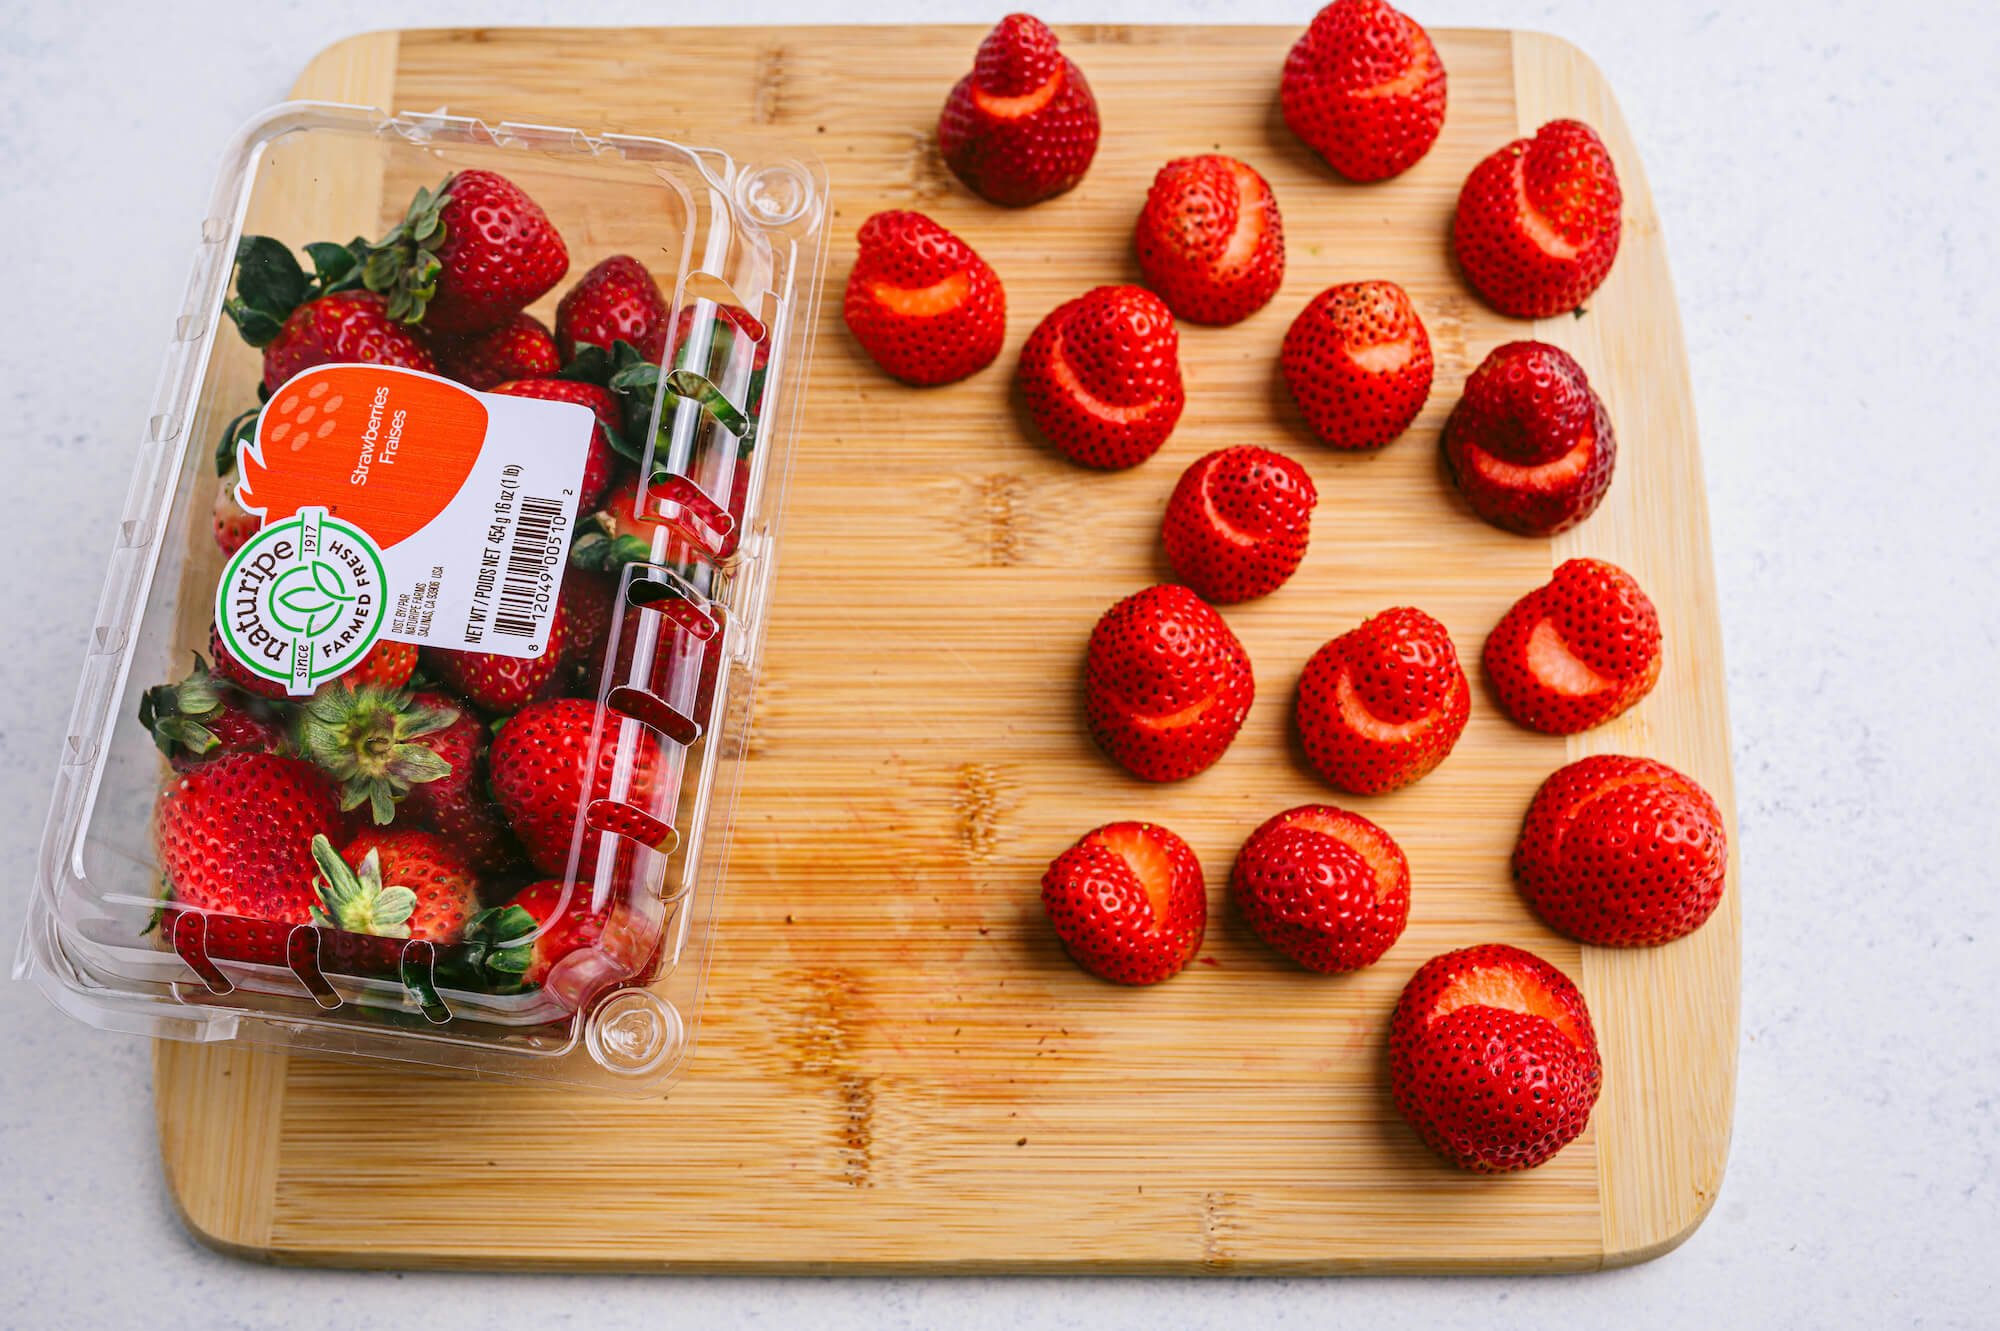 Naturipe strawberries